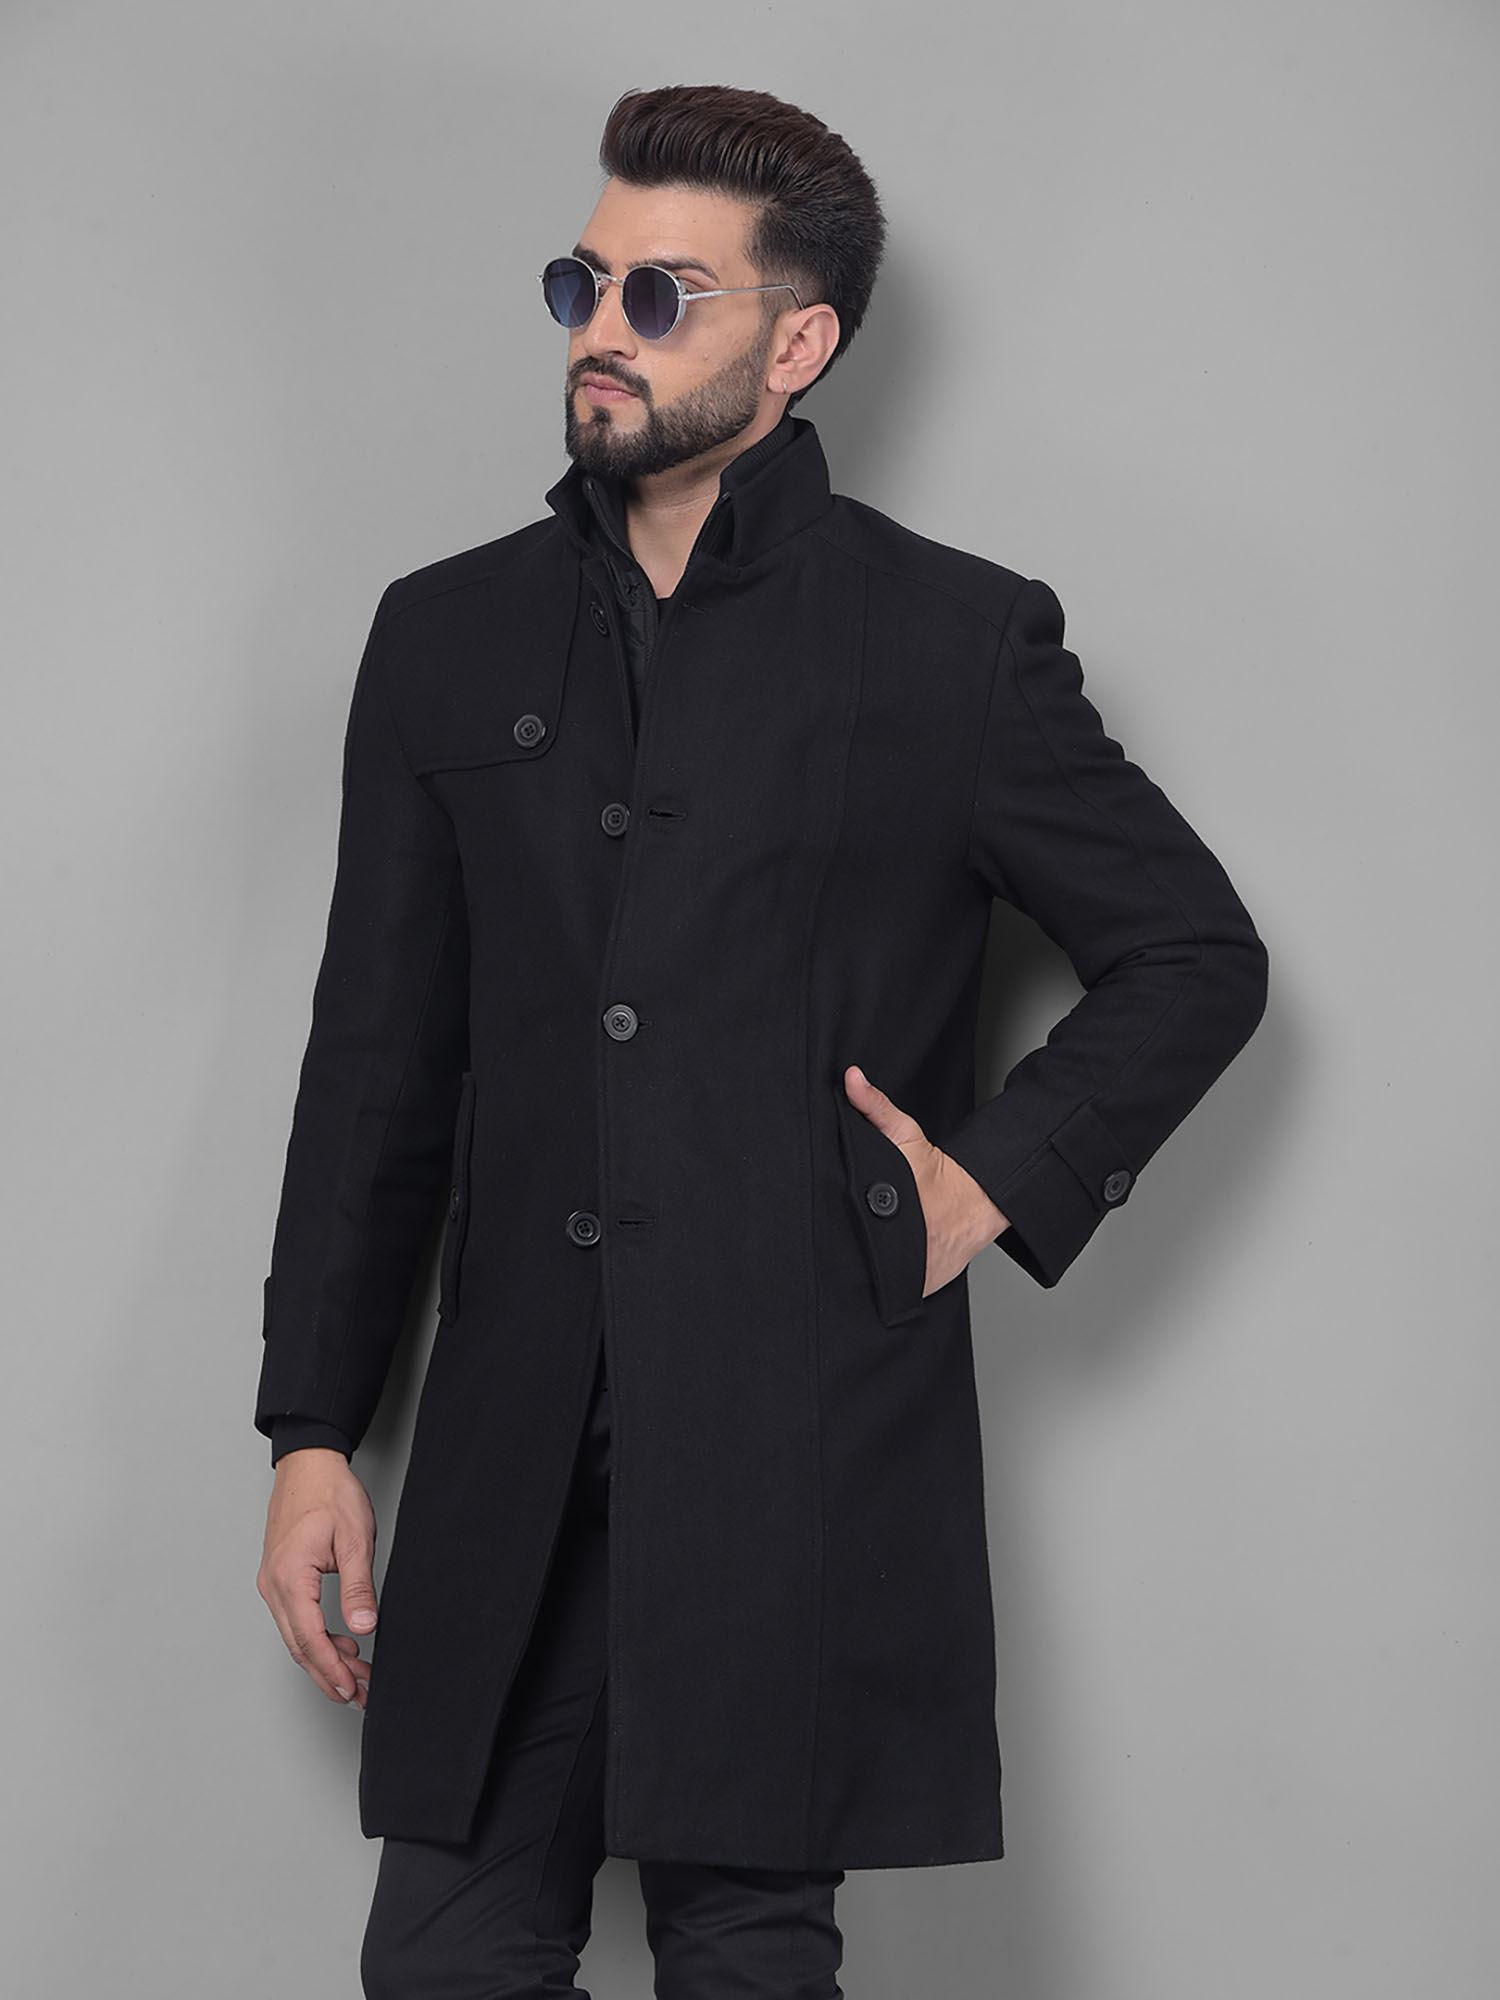 mens-black-overcoat